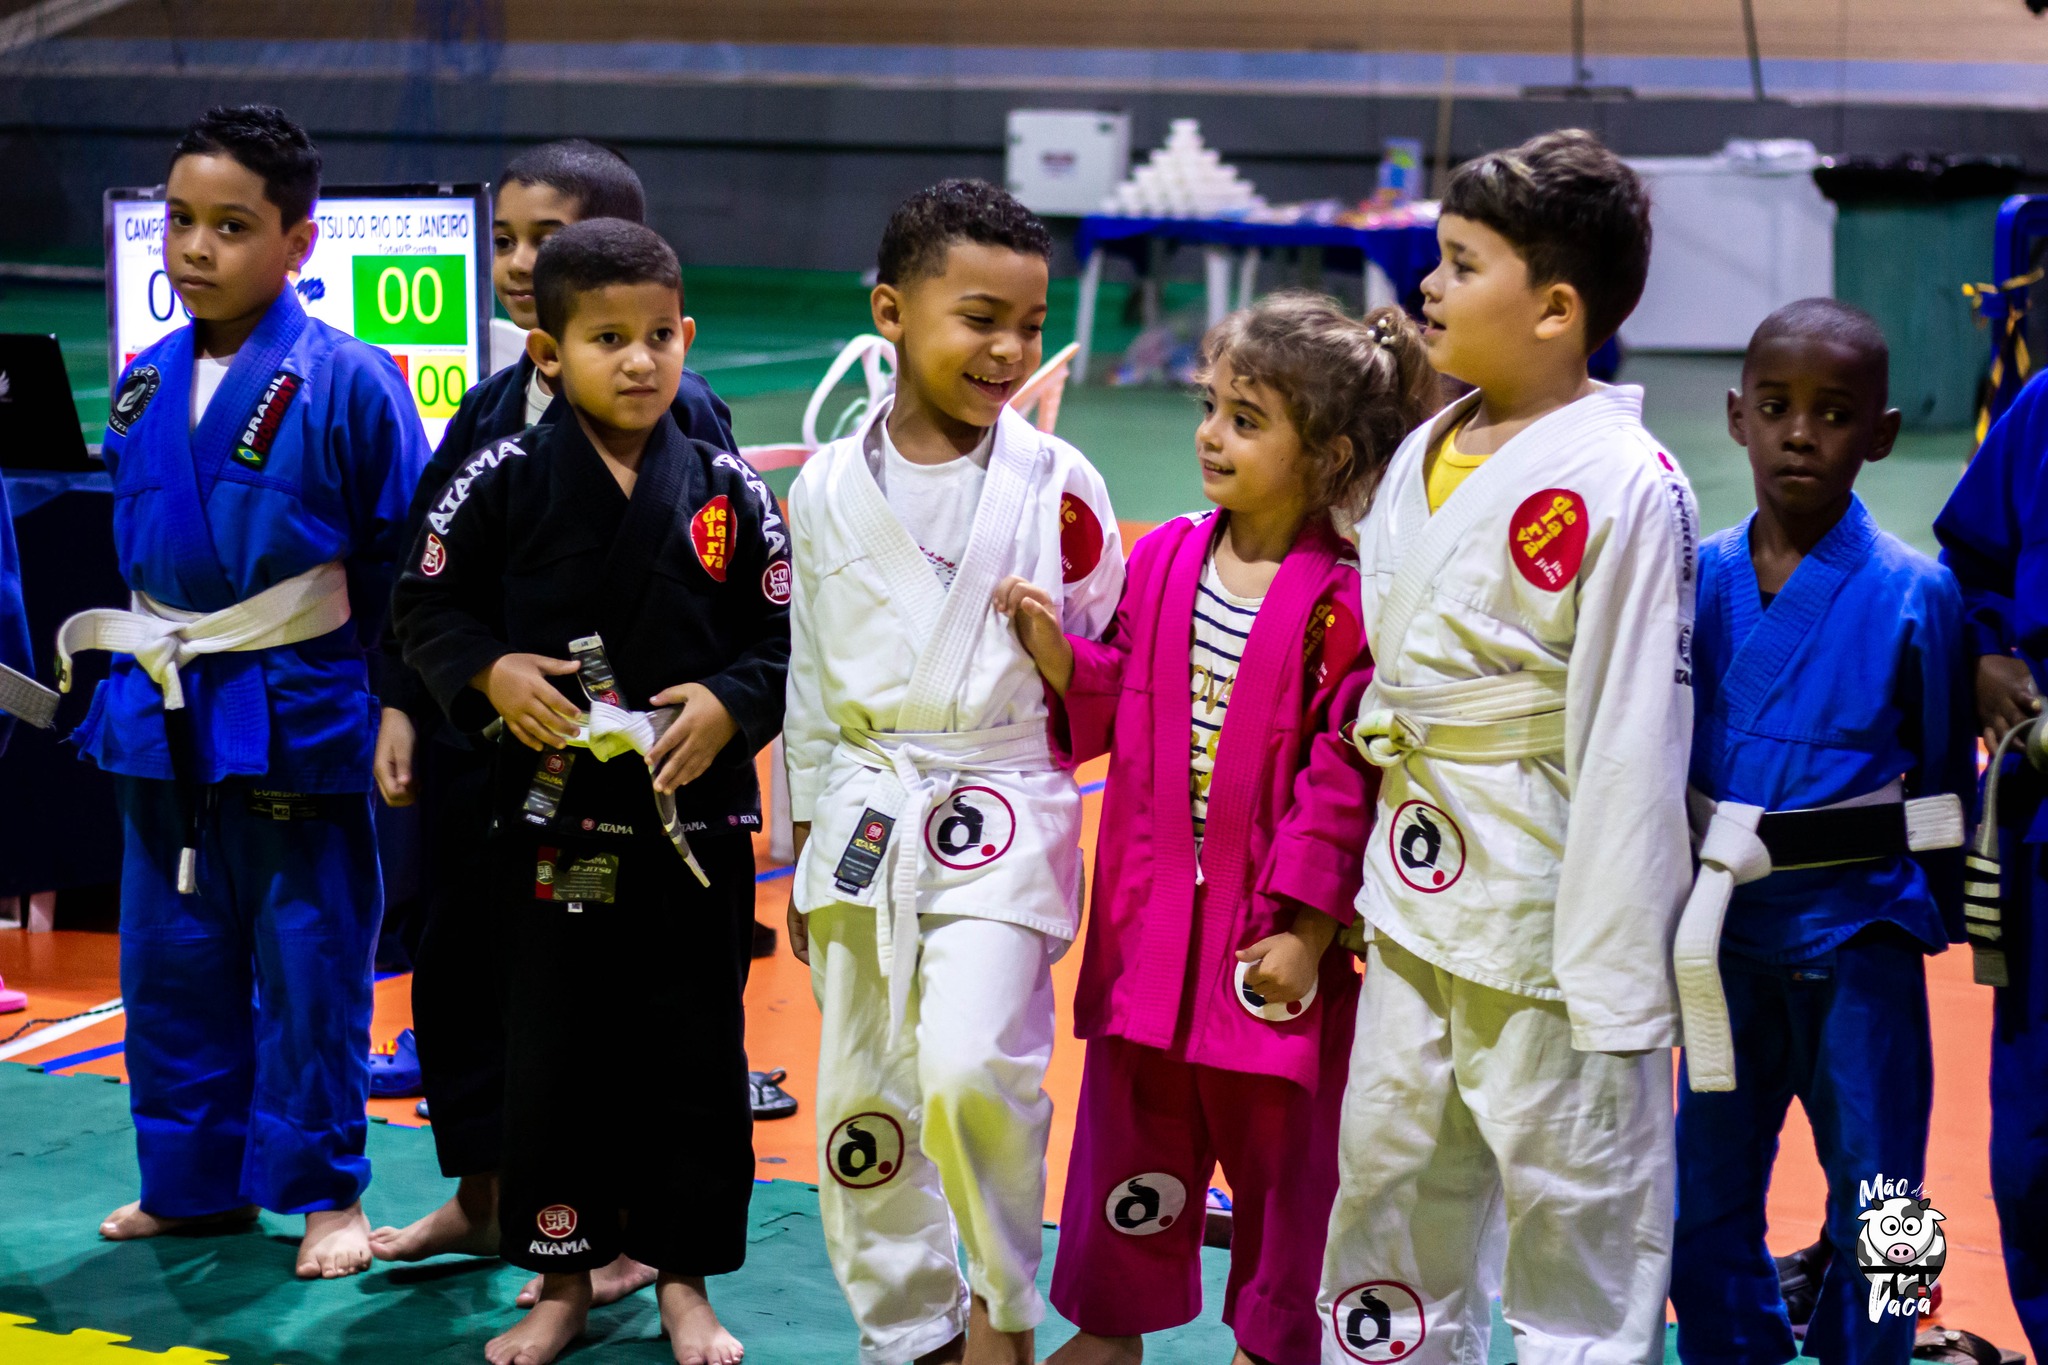 Escola de idiomas apoia projeto social de Jiu Jitsu voltado para crianças